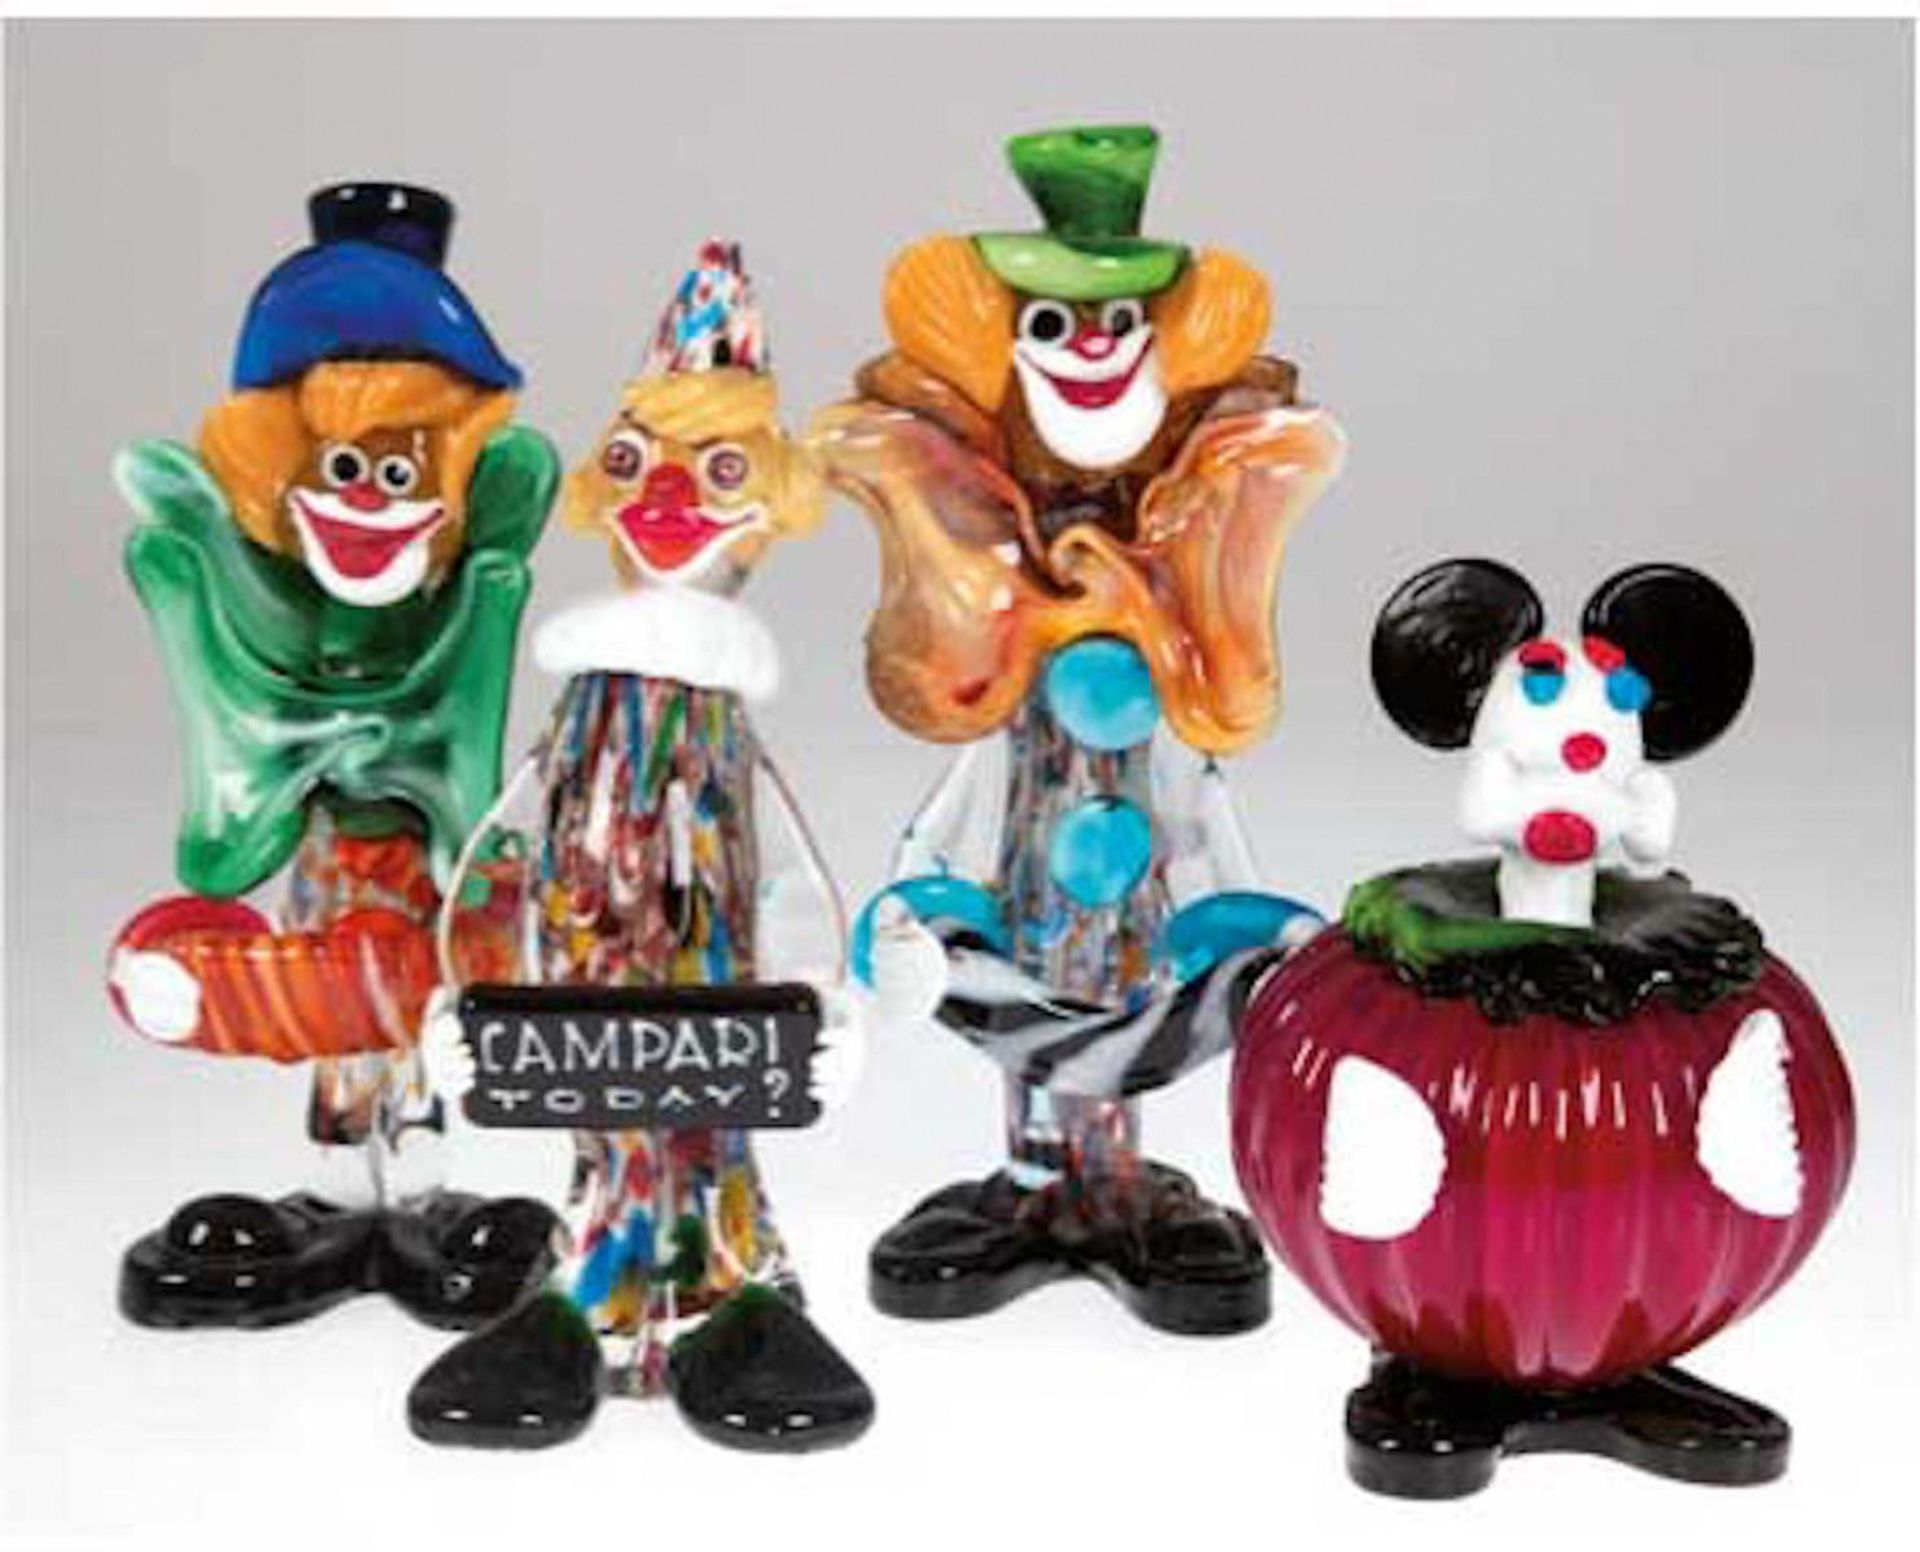 4 diverse Murano-Figuren, dabei 3 Clowns und 1 Micky Maus, farbiges Glas bzw. farbigeEinschm